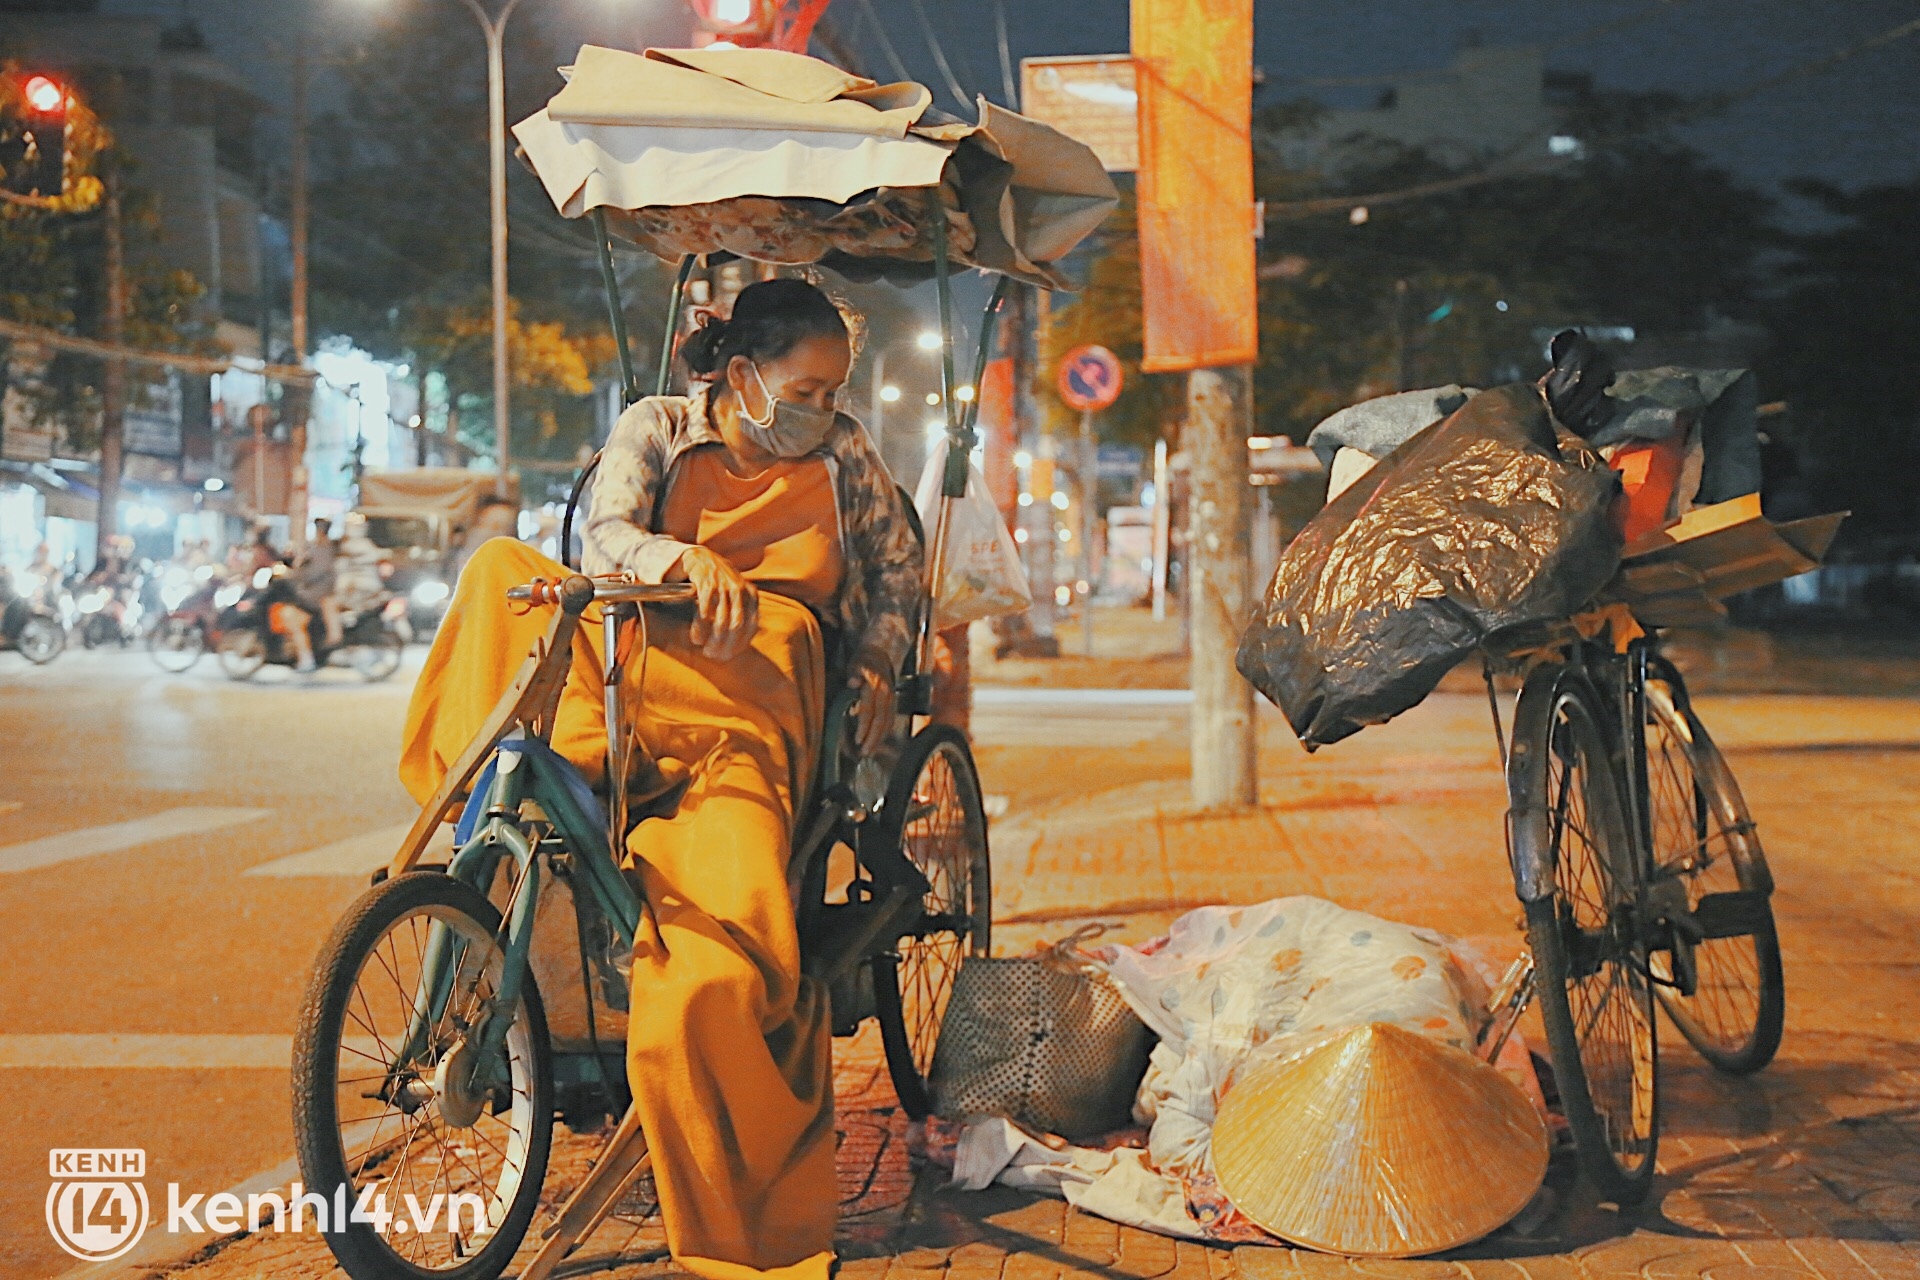 Người vô gia cư co ro trong đêm Sài Gòn ngày cận Tết: Bà làm gì có nhà để về, ở đây người ta cho đồ ăn, quý lắm... - Ảnh 1.